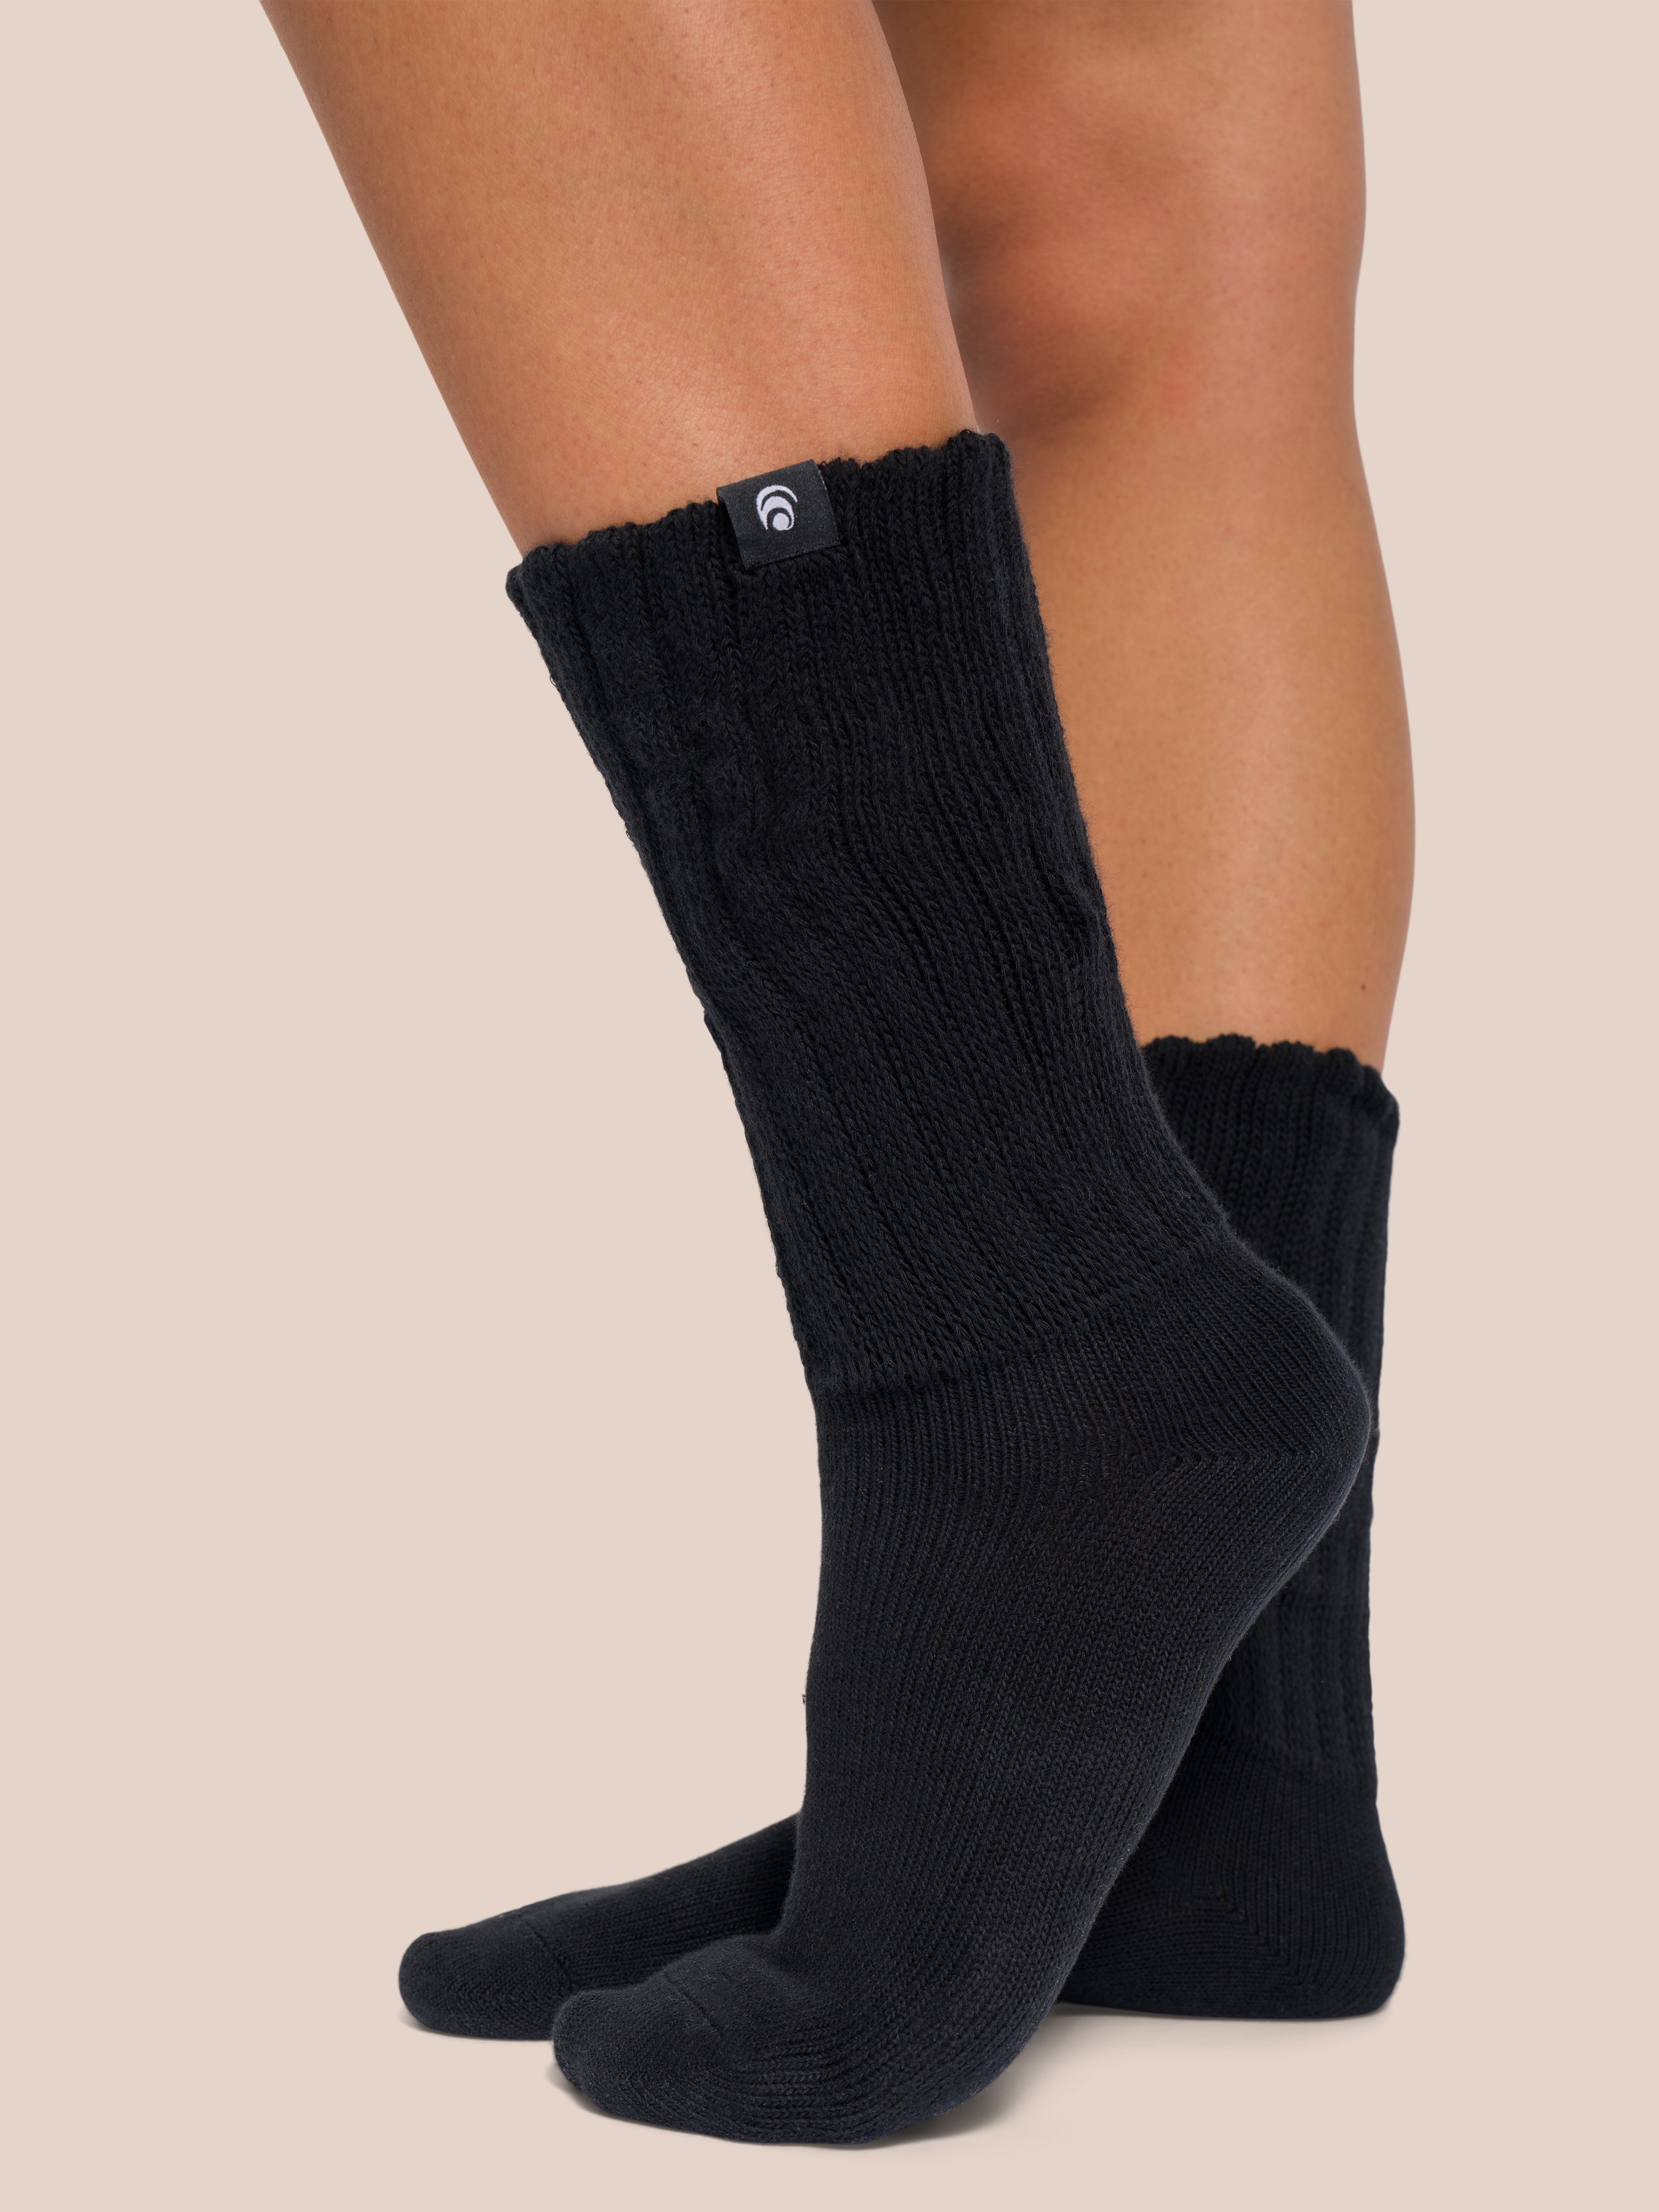 Beverly Socks